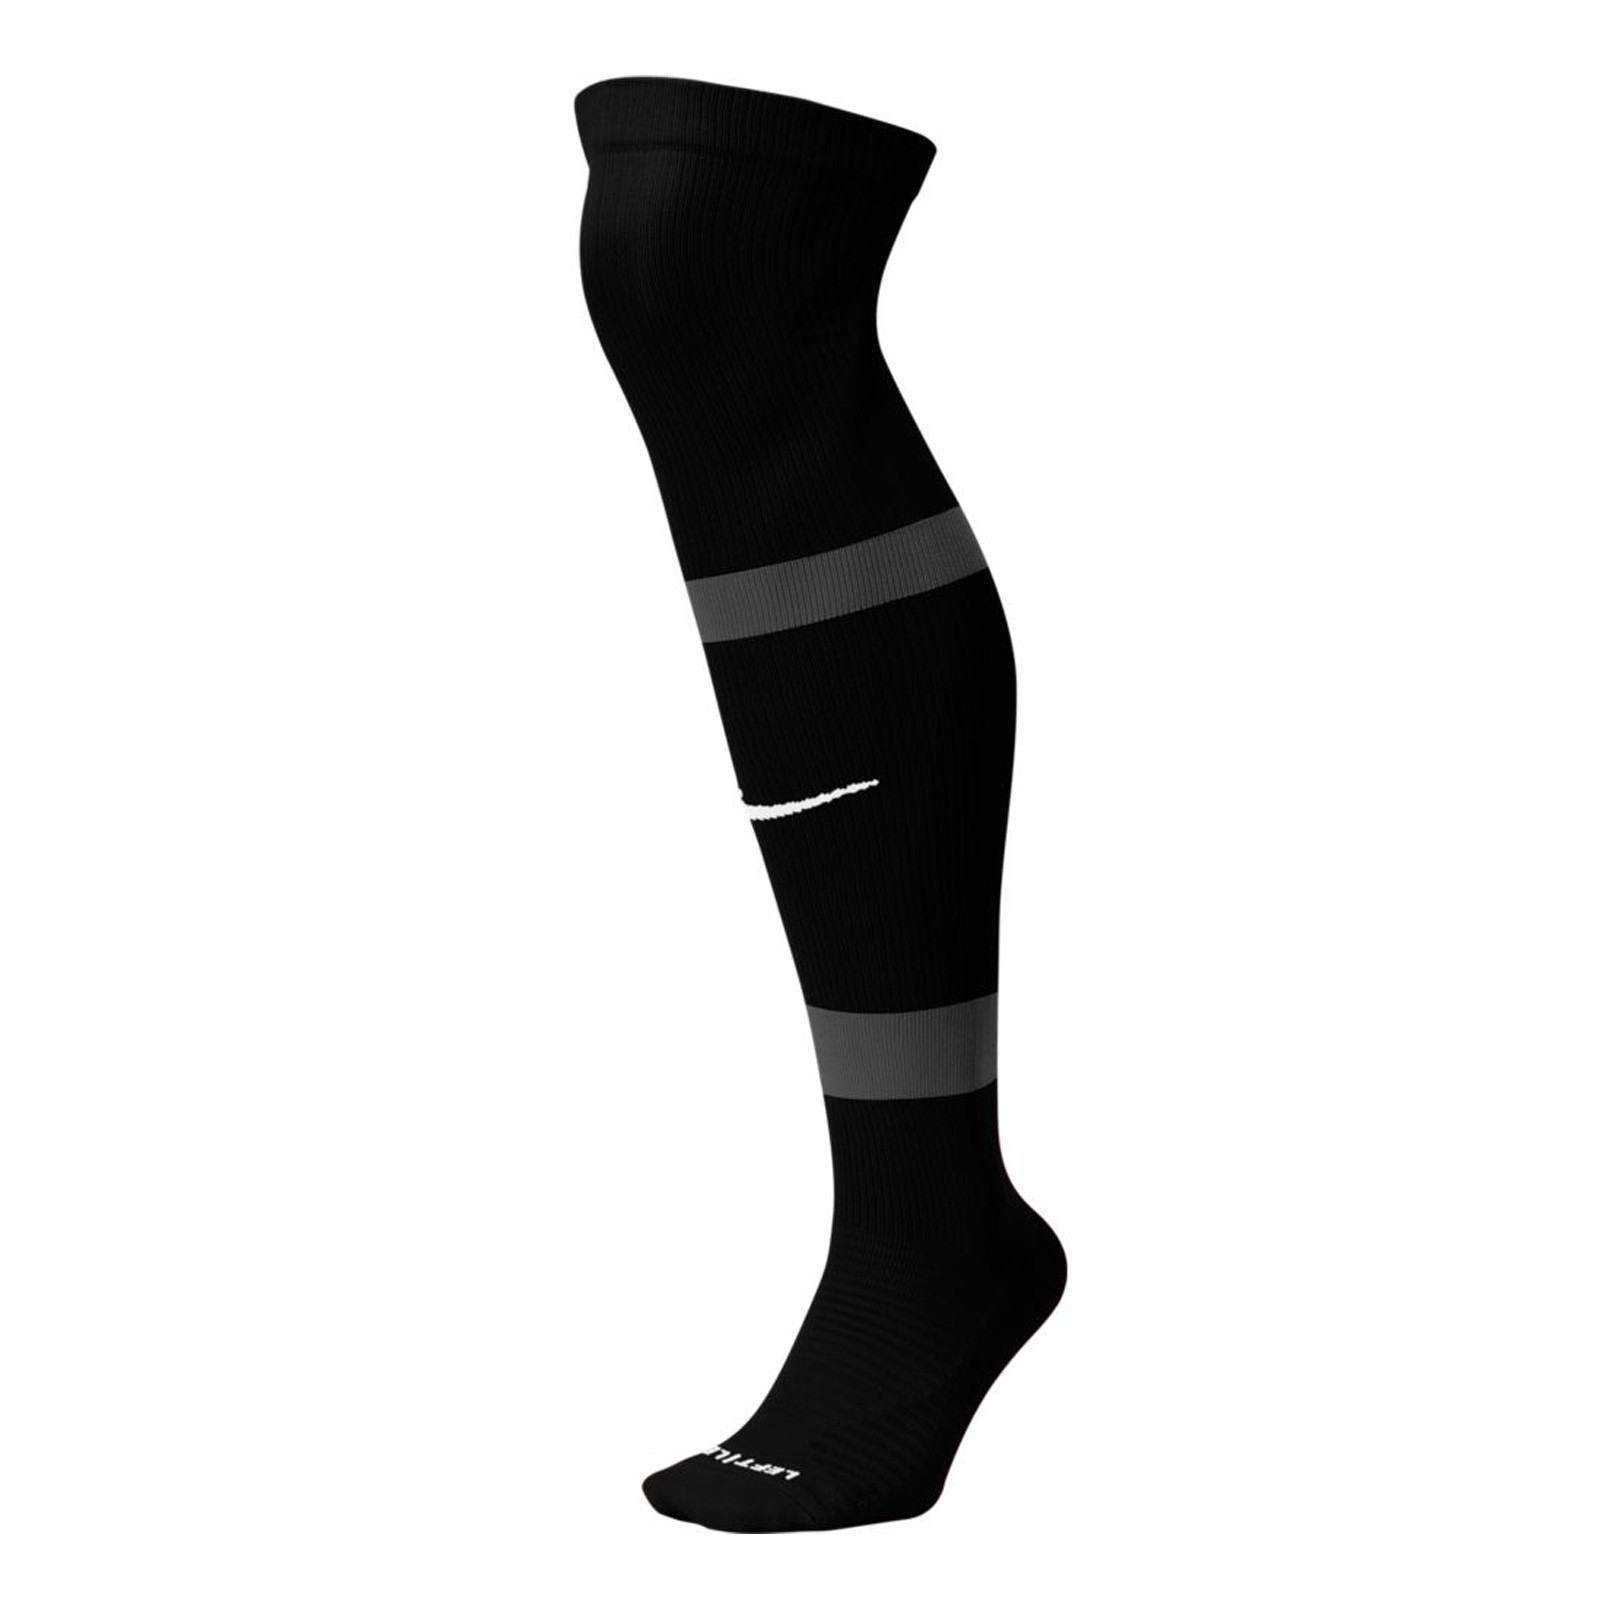 Nike Academy - Negro - Calcetas Fútbol Hombre 